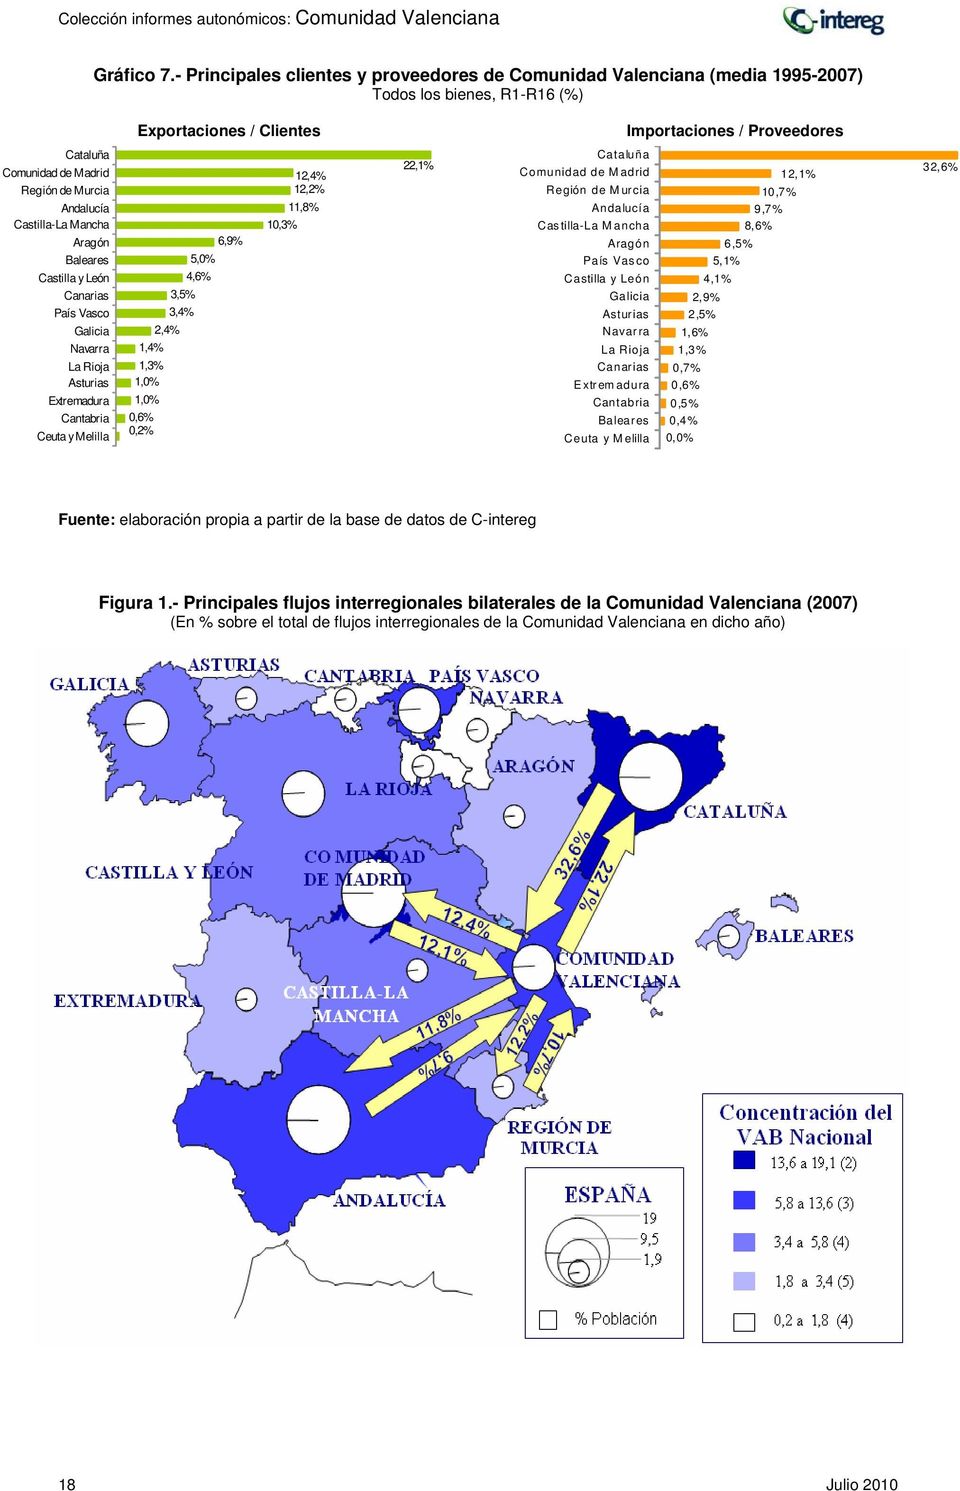 Murcia Andalucía Castilla-La Mancha Aragón Baleares Castilla y León Canarias País Vasco Galicia Navarra La Rioja Asturias Extremadura Cantabria Ceuta y Melilla 6,9% 5,0% 4,6% 3,5% 3,4% 2,4% 1,4% 1,3%